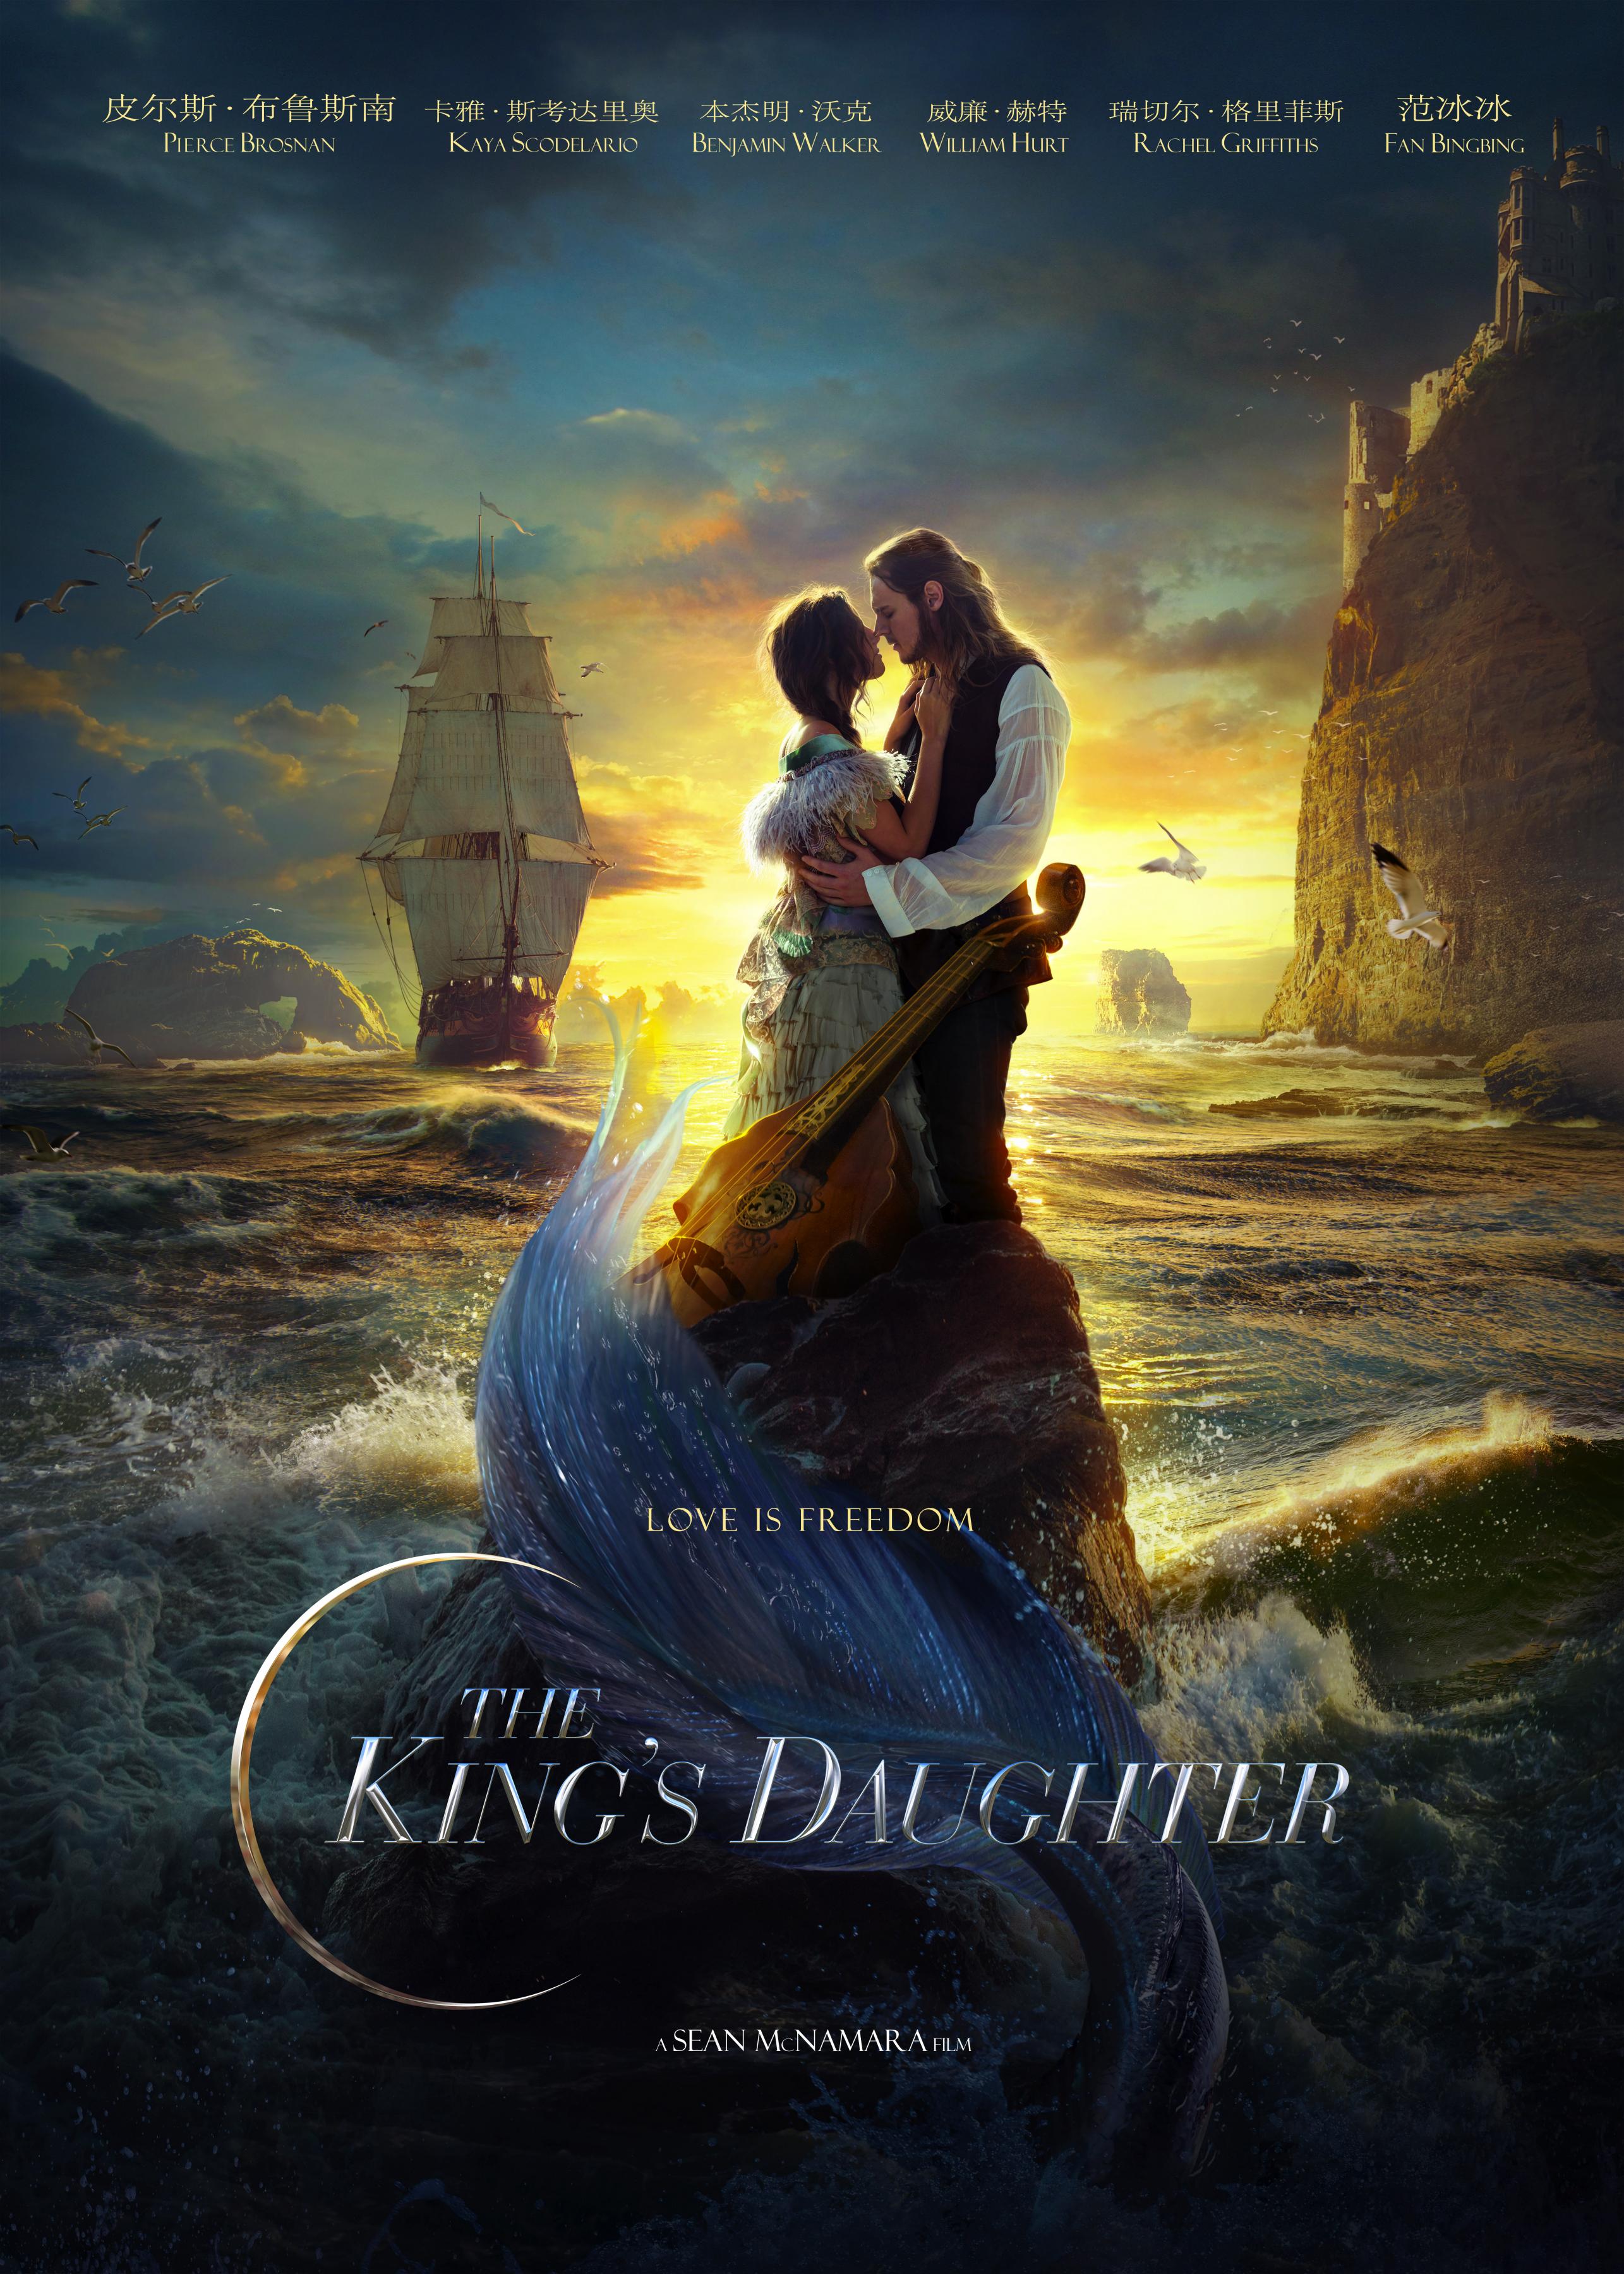 Постер фильма Русалка и дочь короля | The King's Daughter